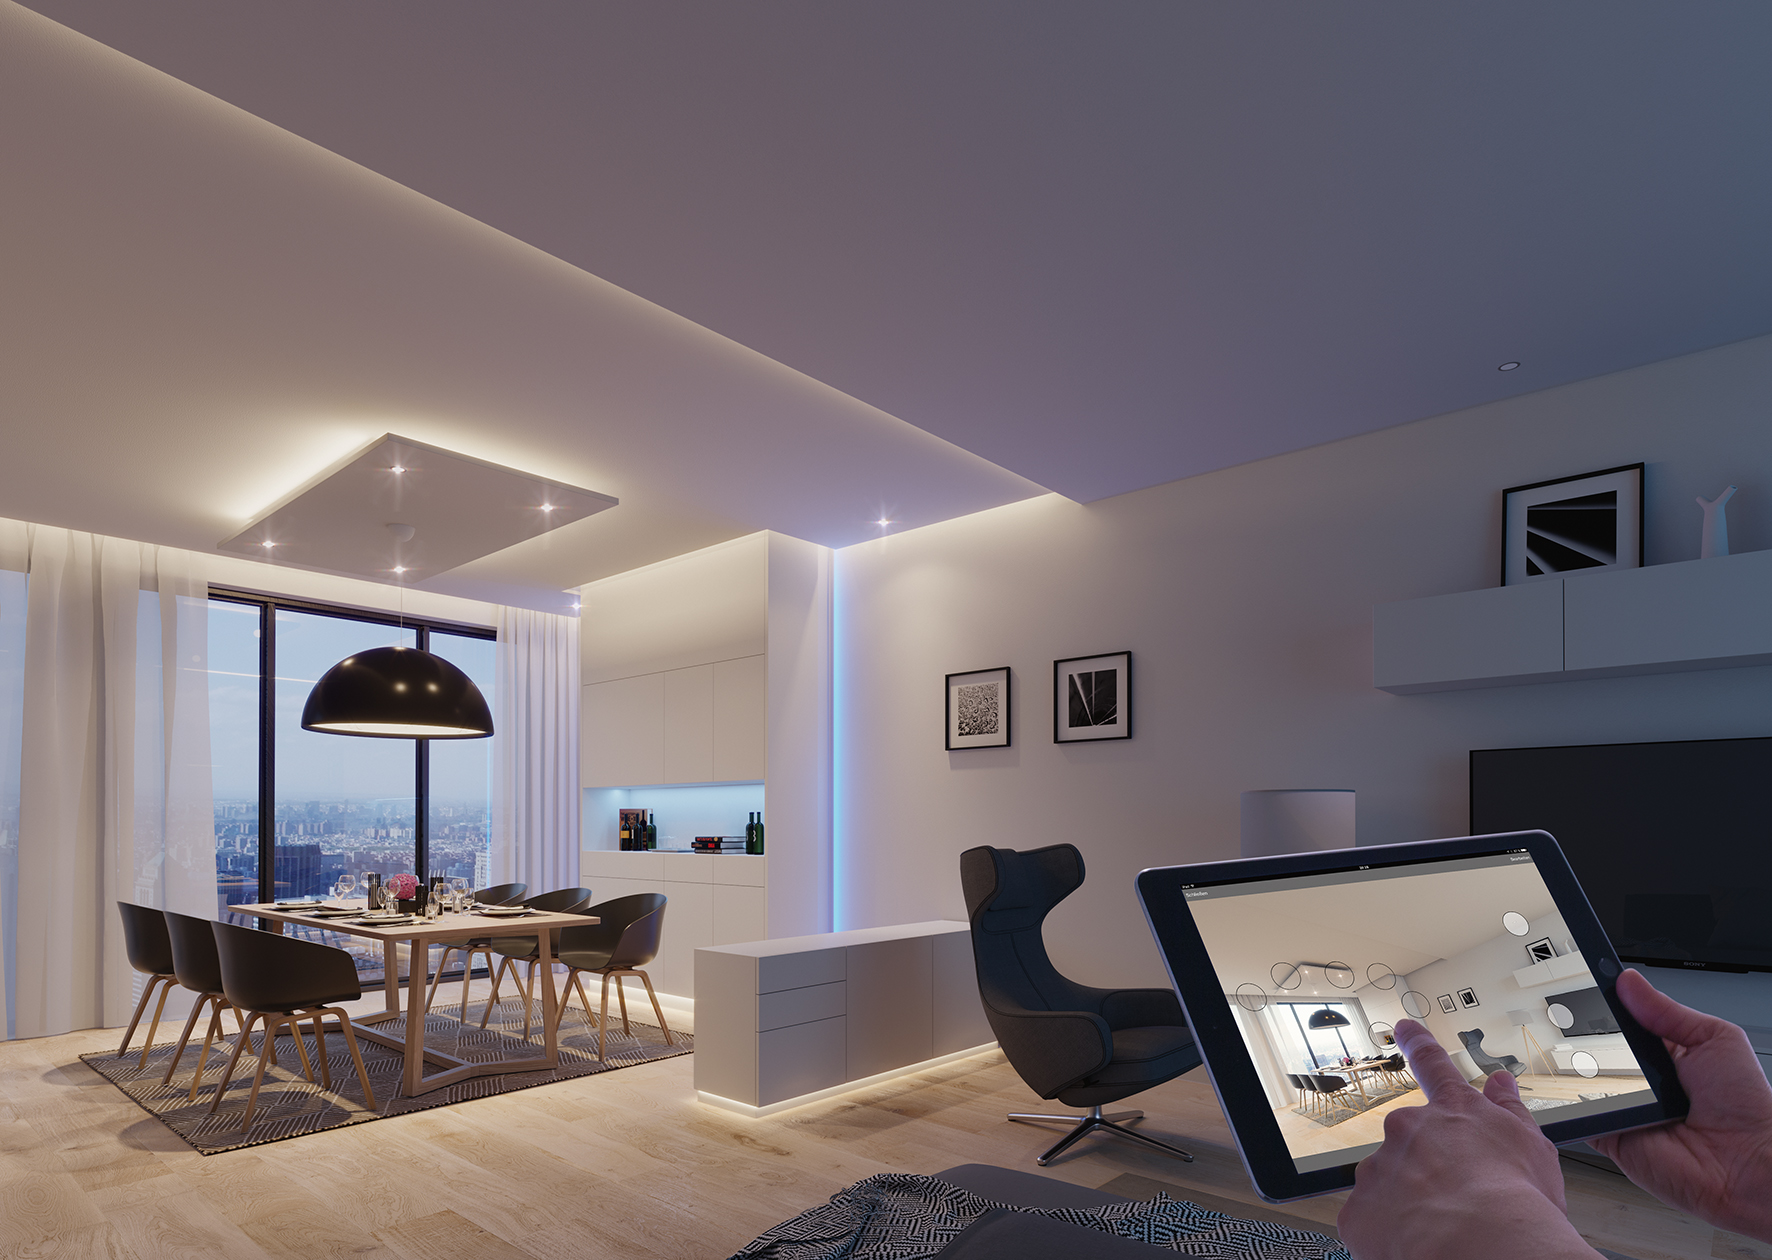 Häfeles Loox LED-lyssystem bliver med en opdatering af mange produkter og Häfele Connect appen indgangen til den smarte verden af møbler og rum.